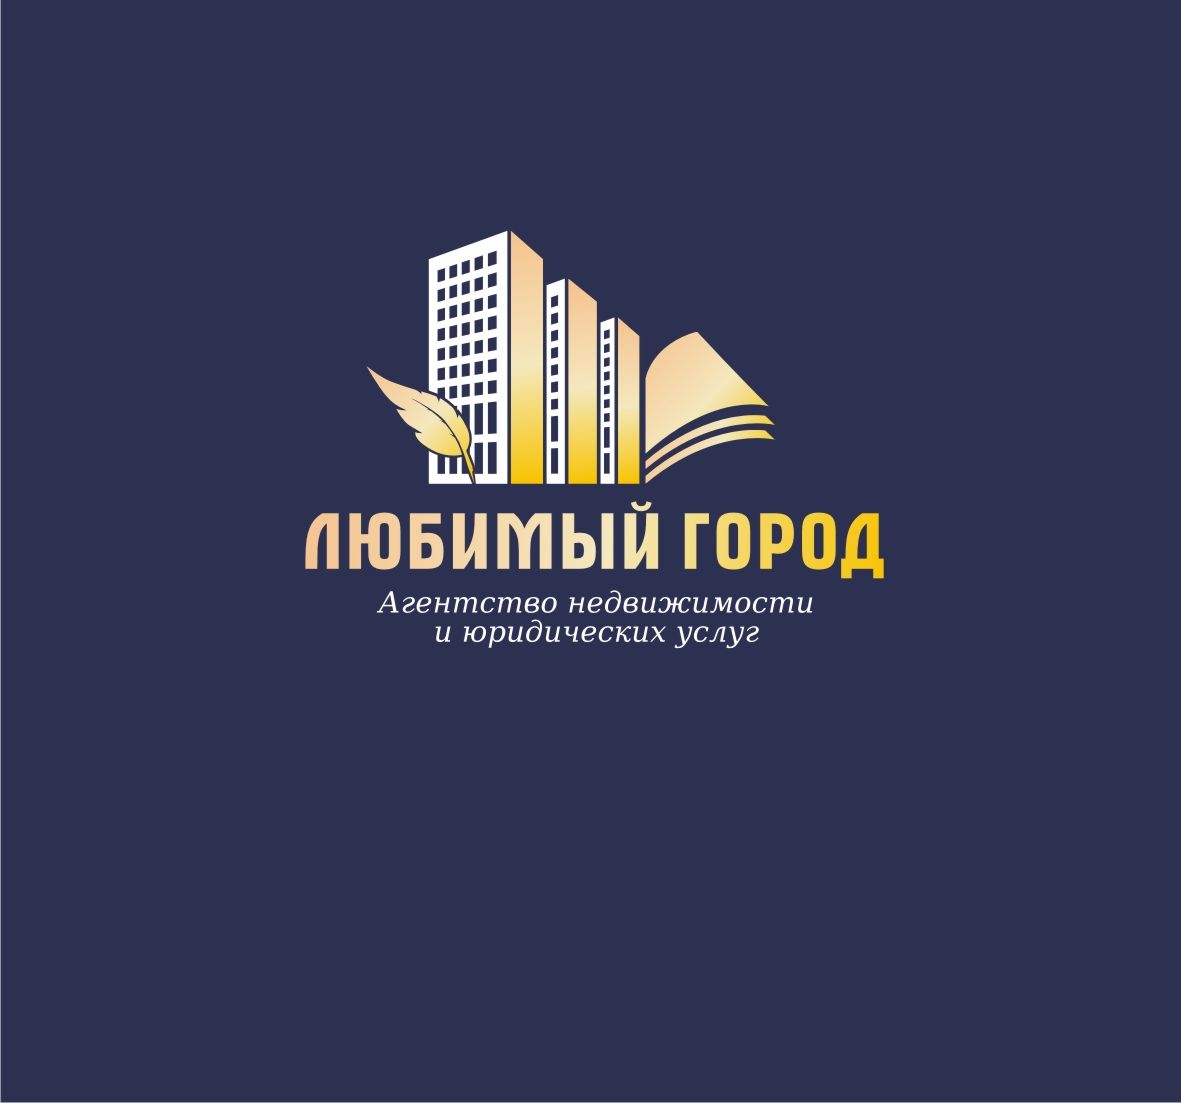 Лого для агентства недвиж и юридических услуг - дизайнер DINA